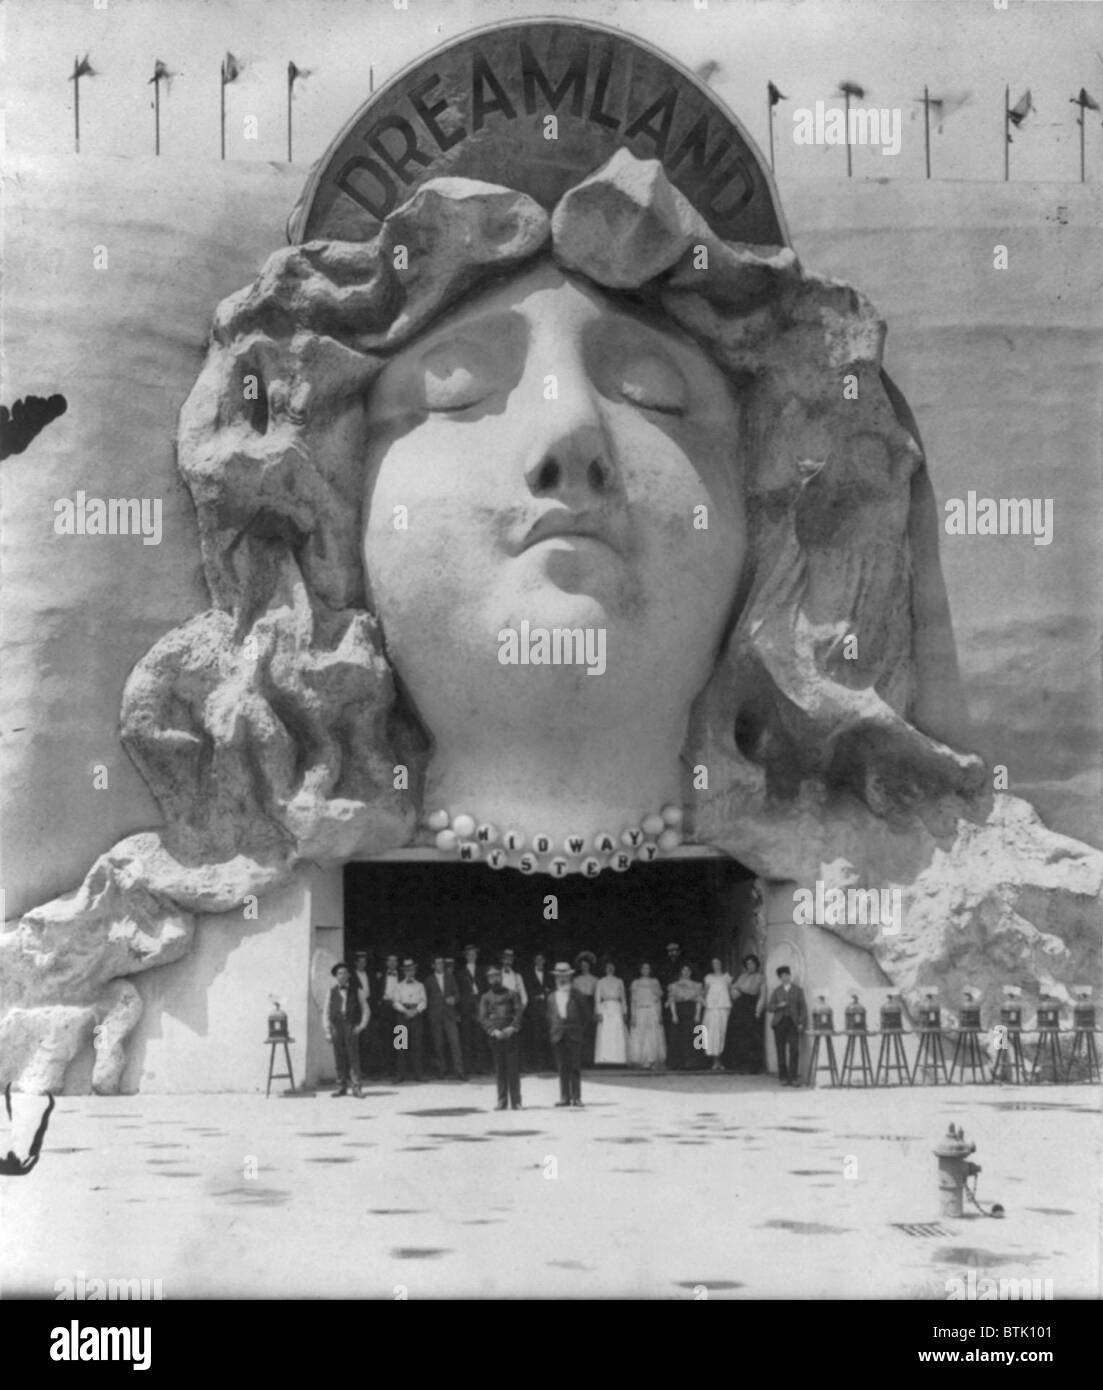 Vergnügungsparks, "Auf der Midway", Gruppe von Personen, Dreamland, dekoriert mit Flachrelief des Schlafens Frau, Pan-American Exposition, Buffalo, New York, Foto, 1901 am Eingang gestellt. Stockfoto